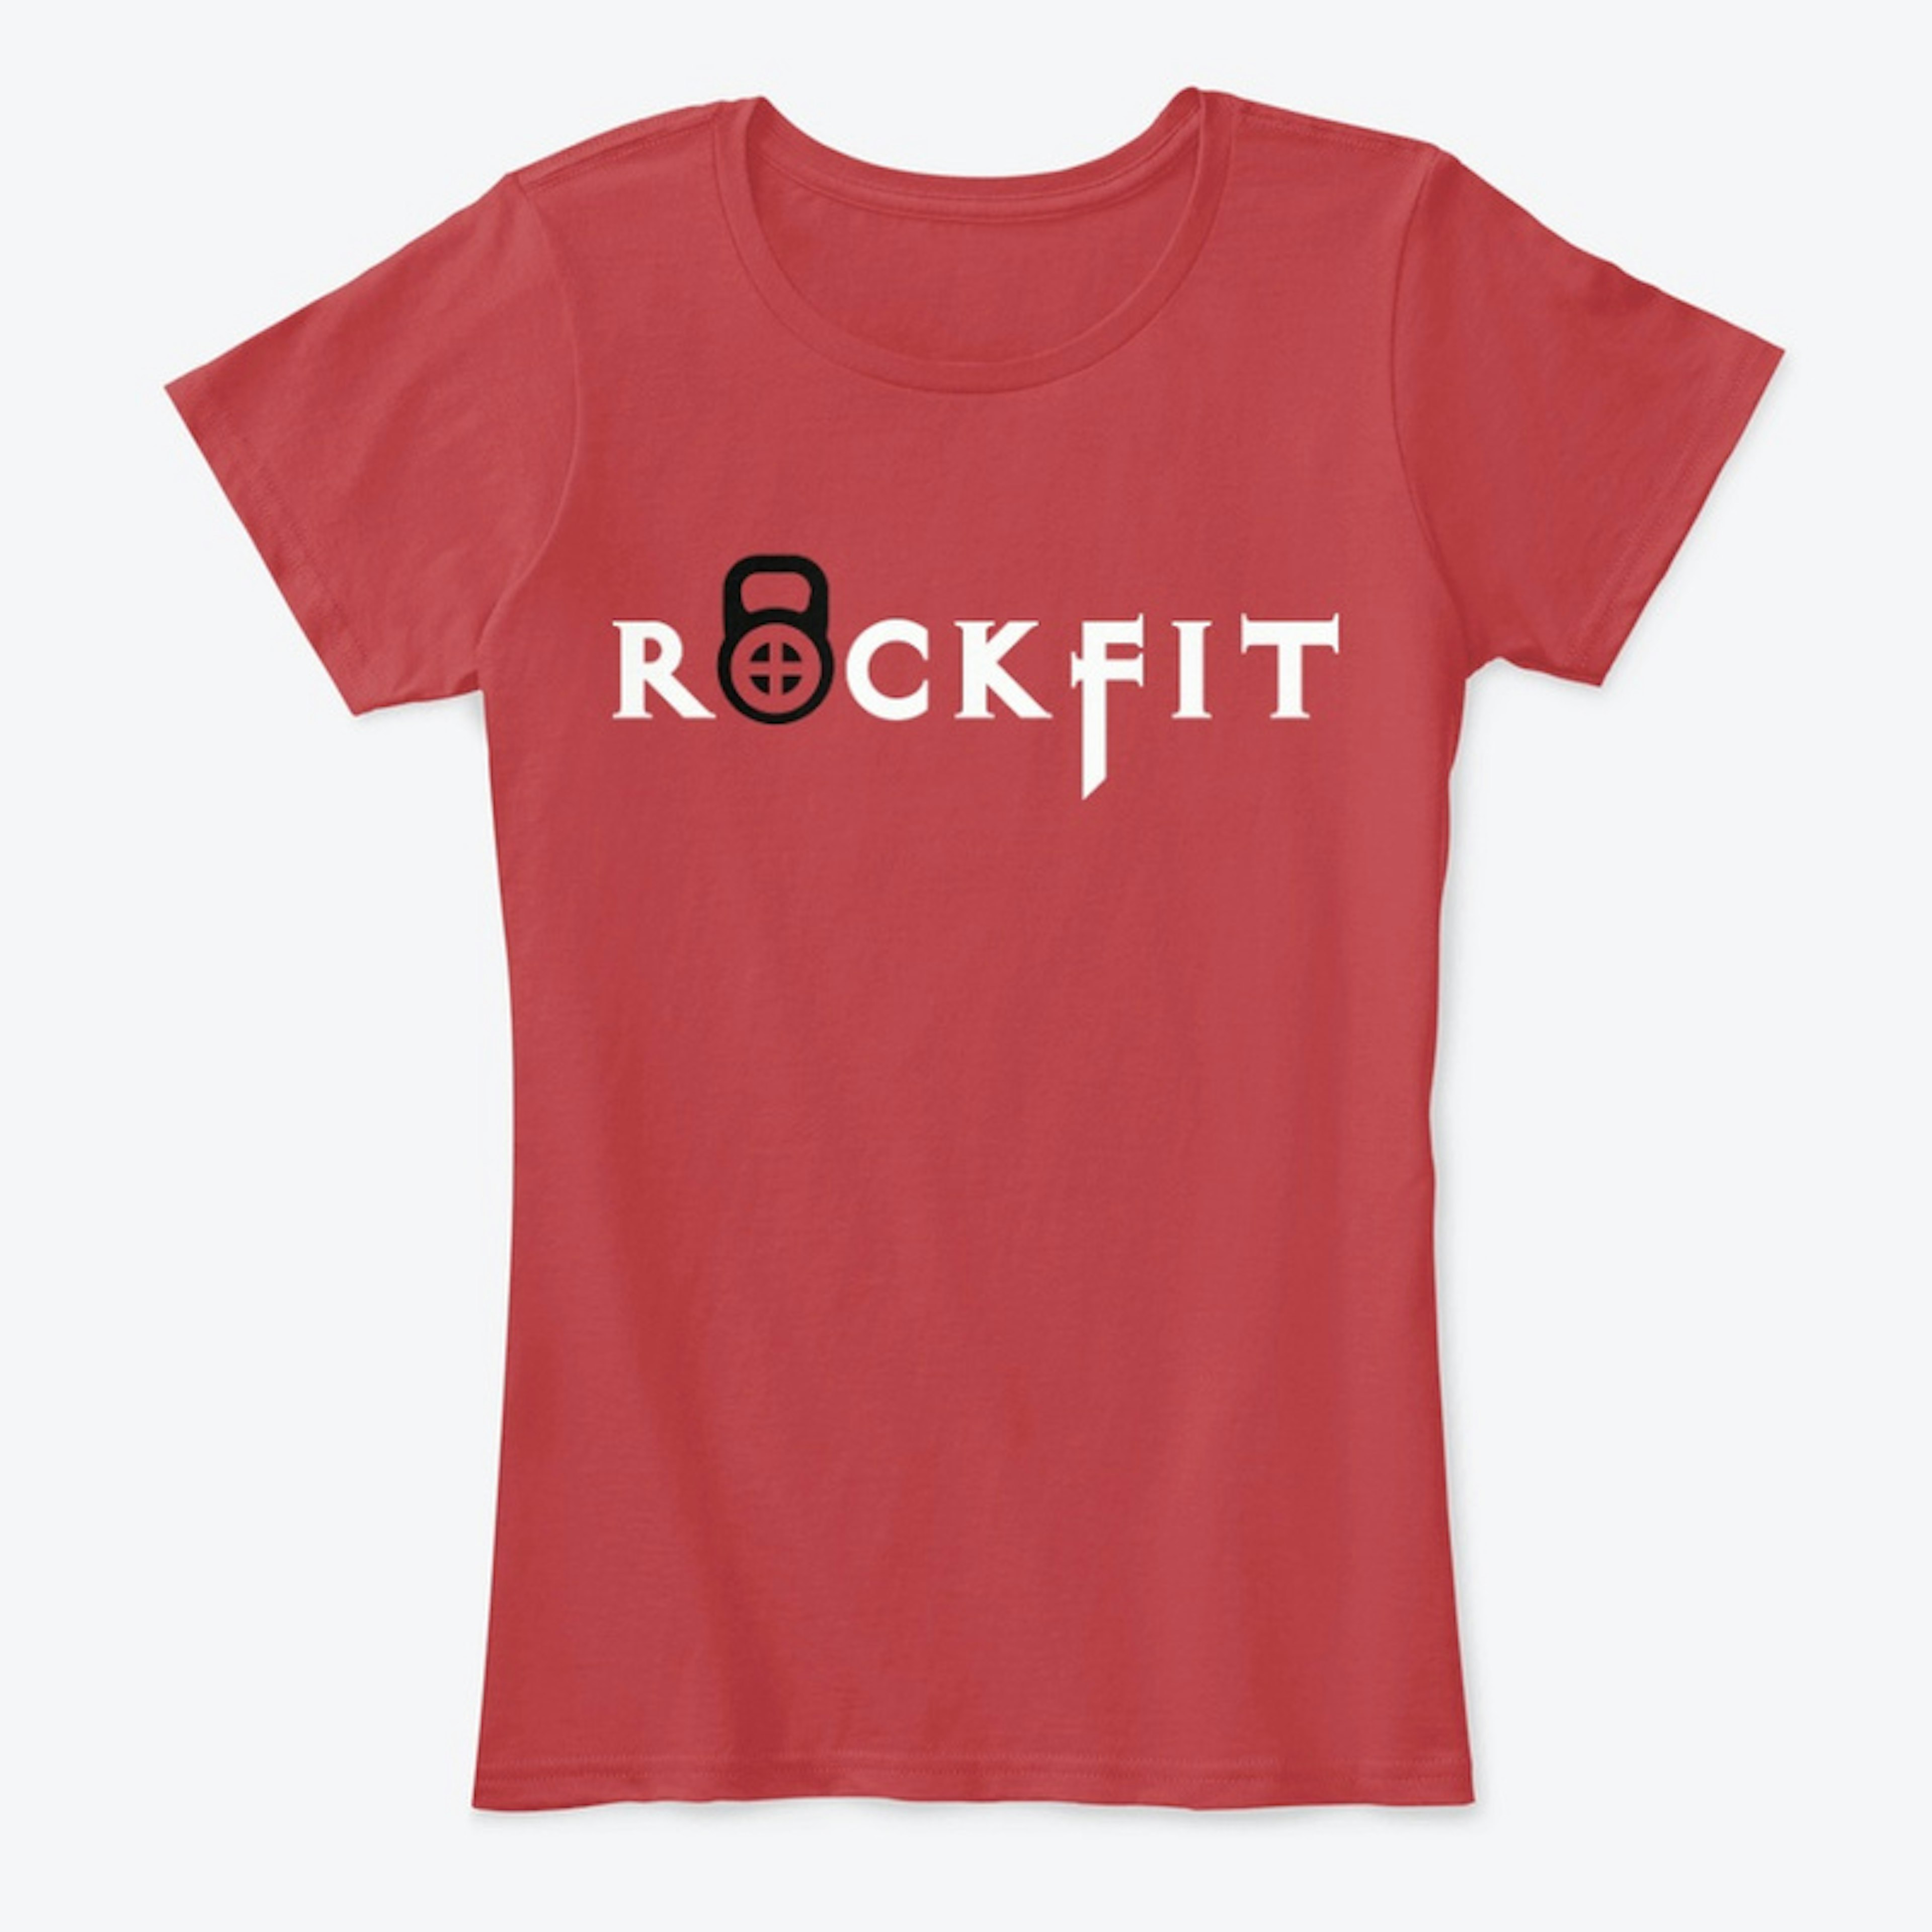 Rockfit Women's Red T-Shirt